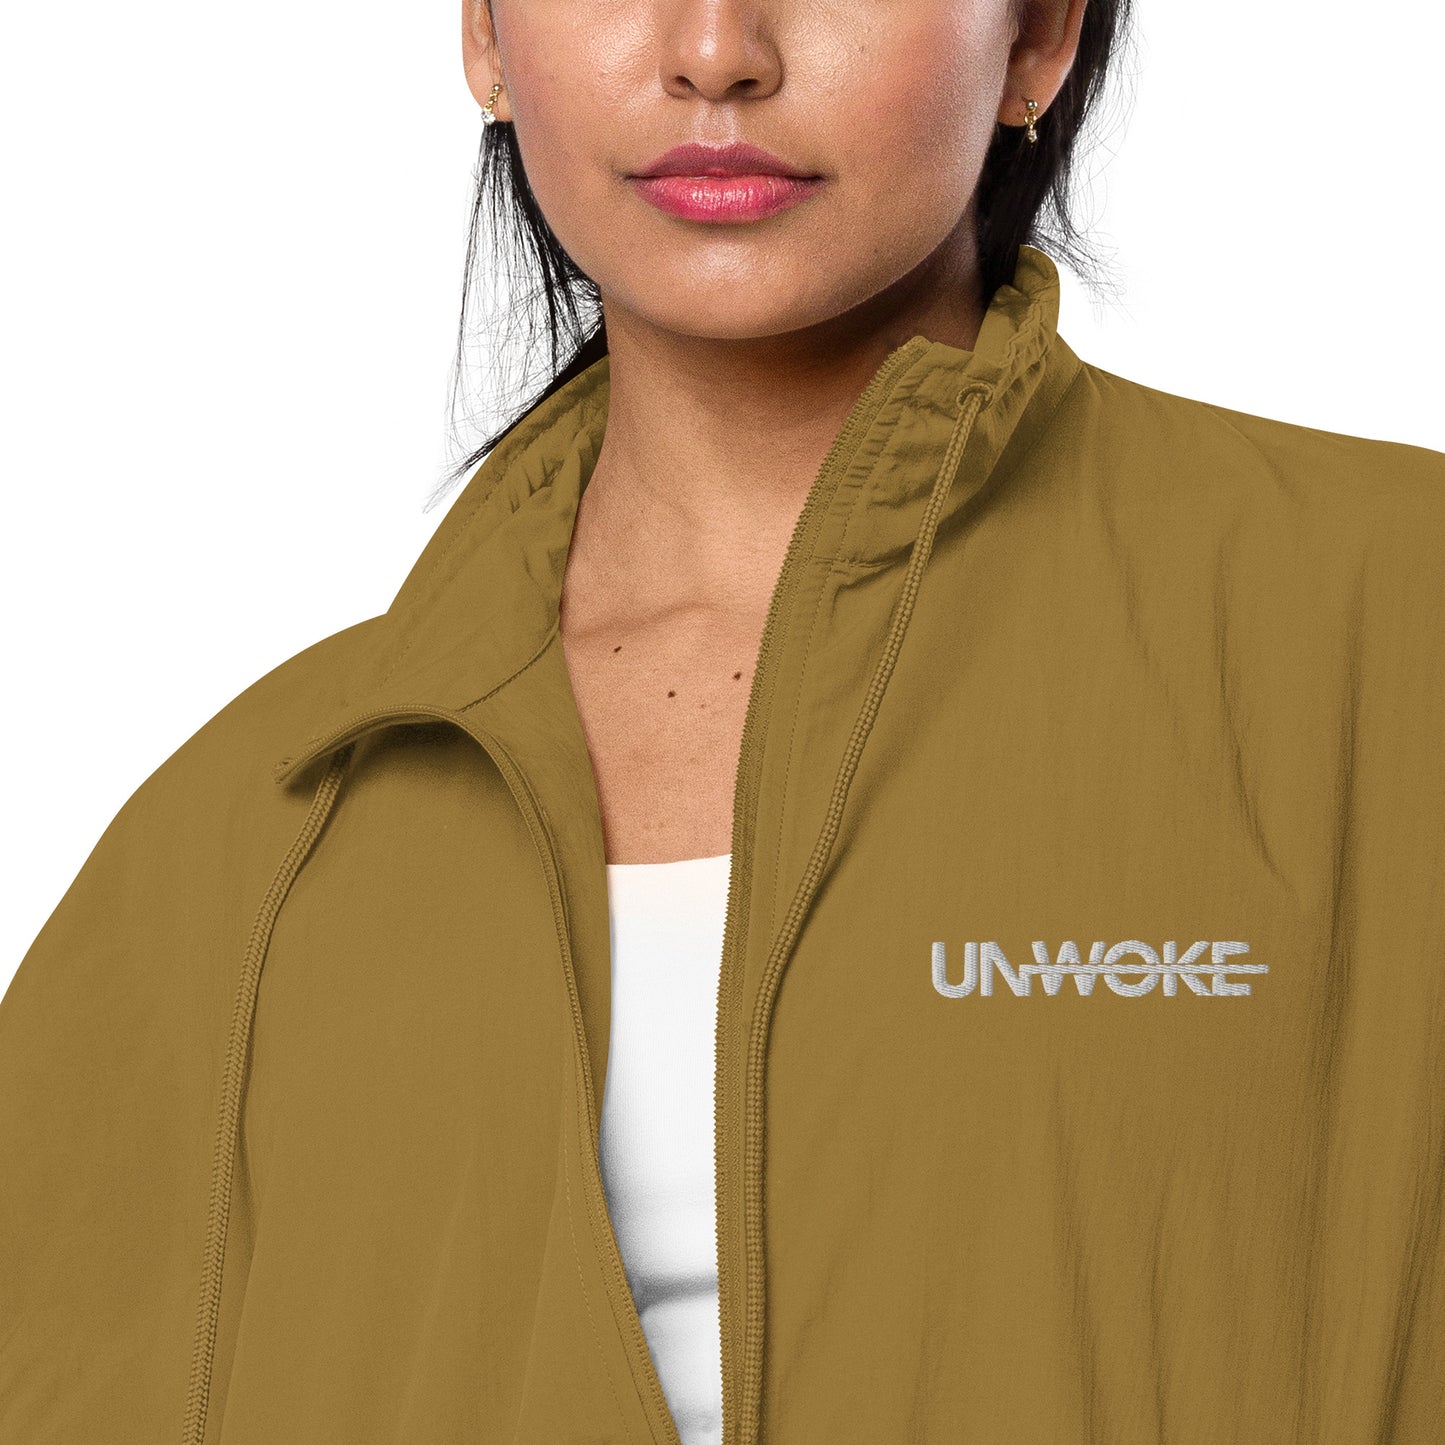 Unwoke Minimalist Recycled tracksuit jacket